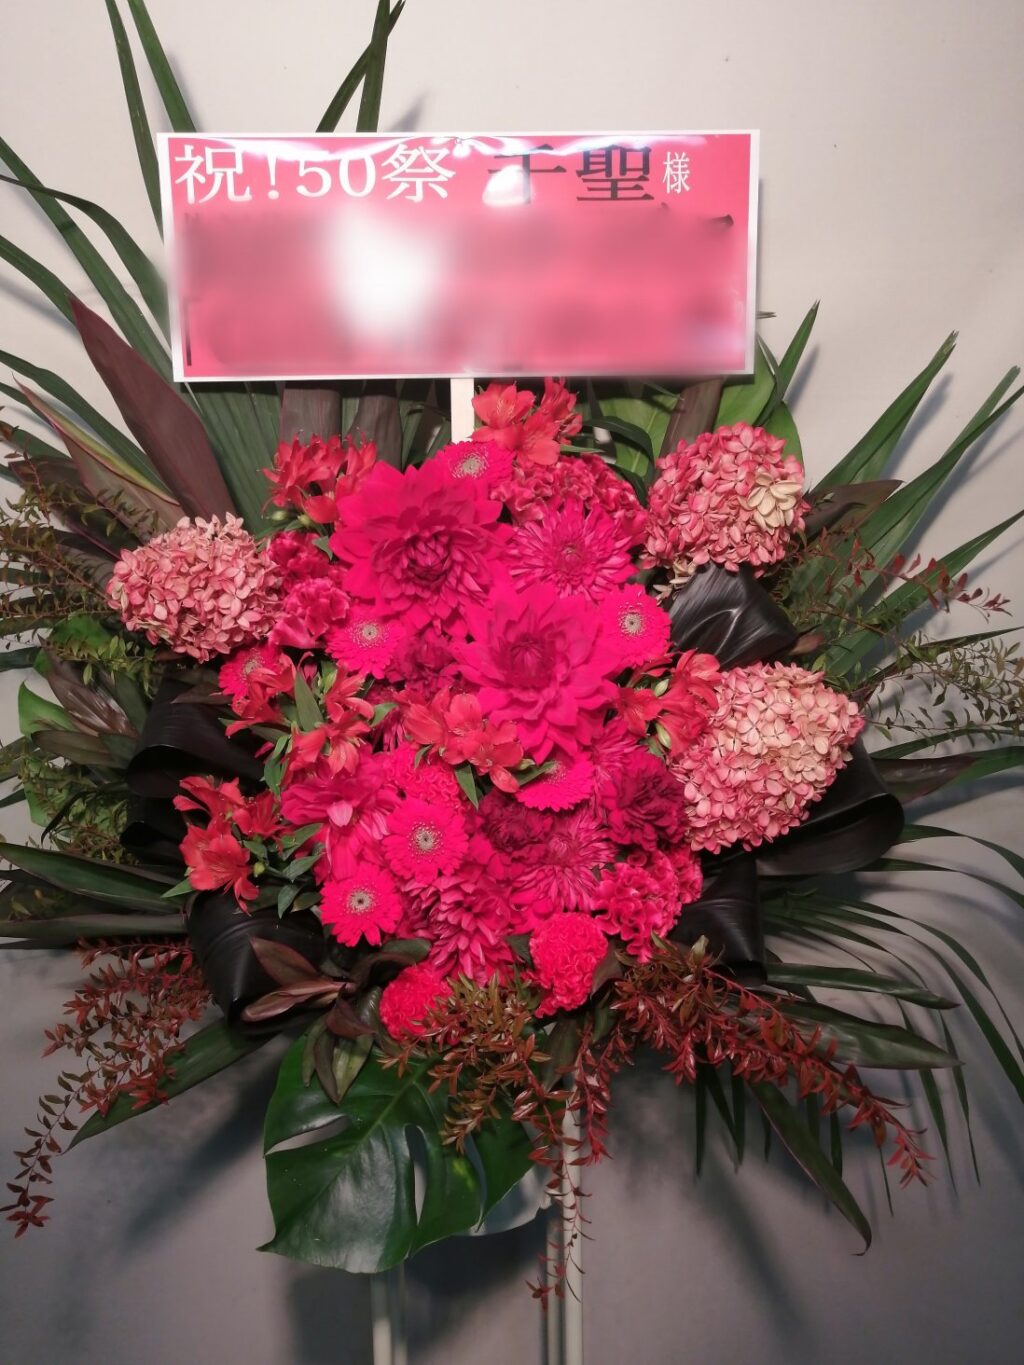 新宿のバトゥール東京にお届けした赤のスタンド花。千聖様宛。